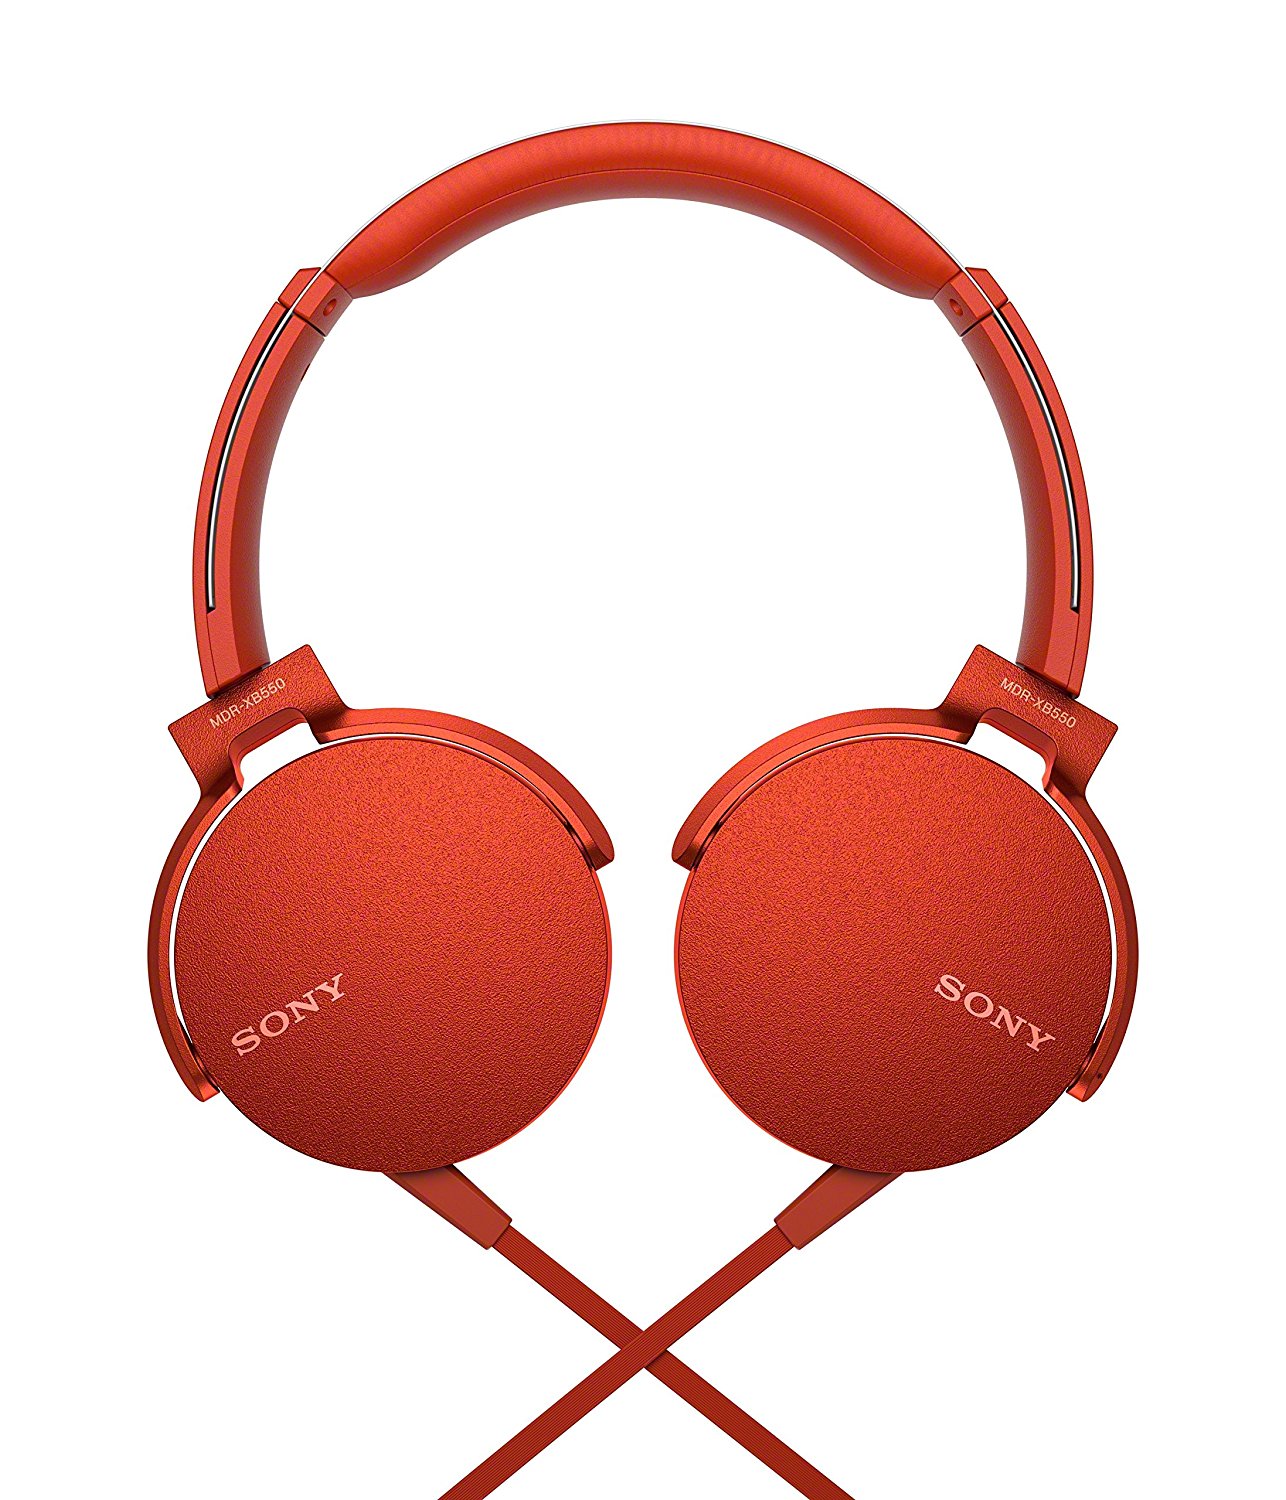 Sony MDR-XB550AP - Écouteur avec micro - One-Ear - 3,5 mm Jack - Rouge